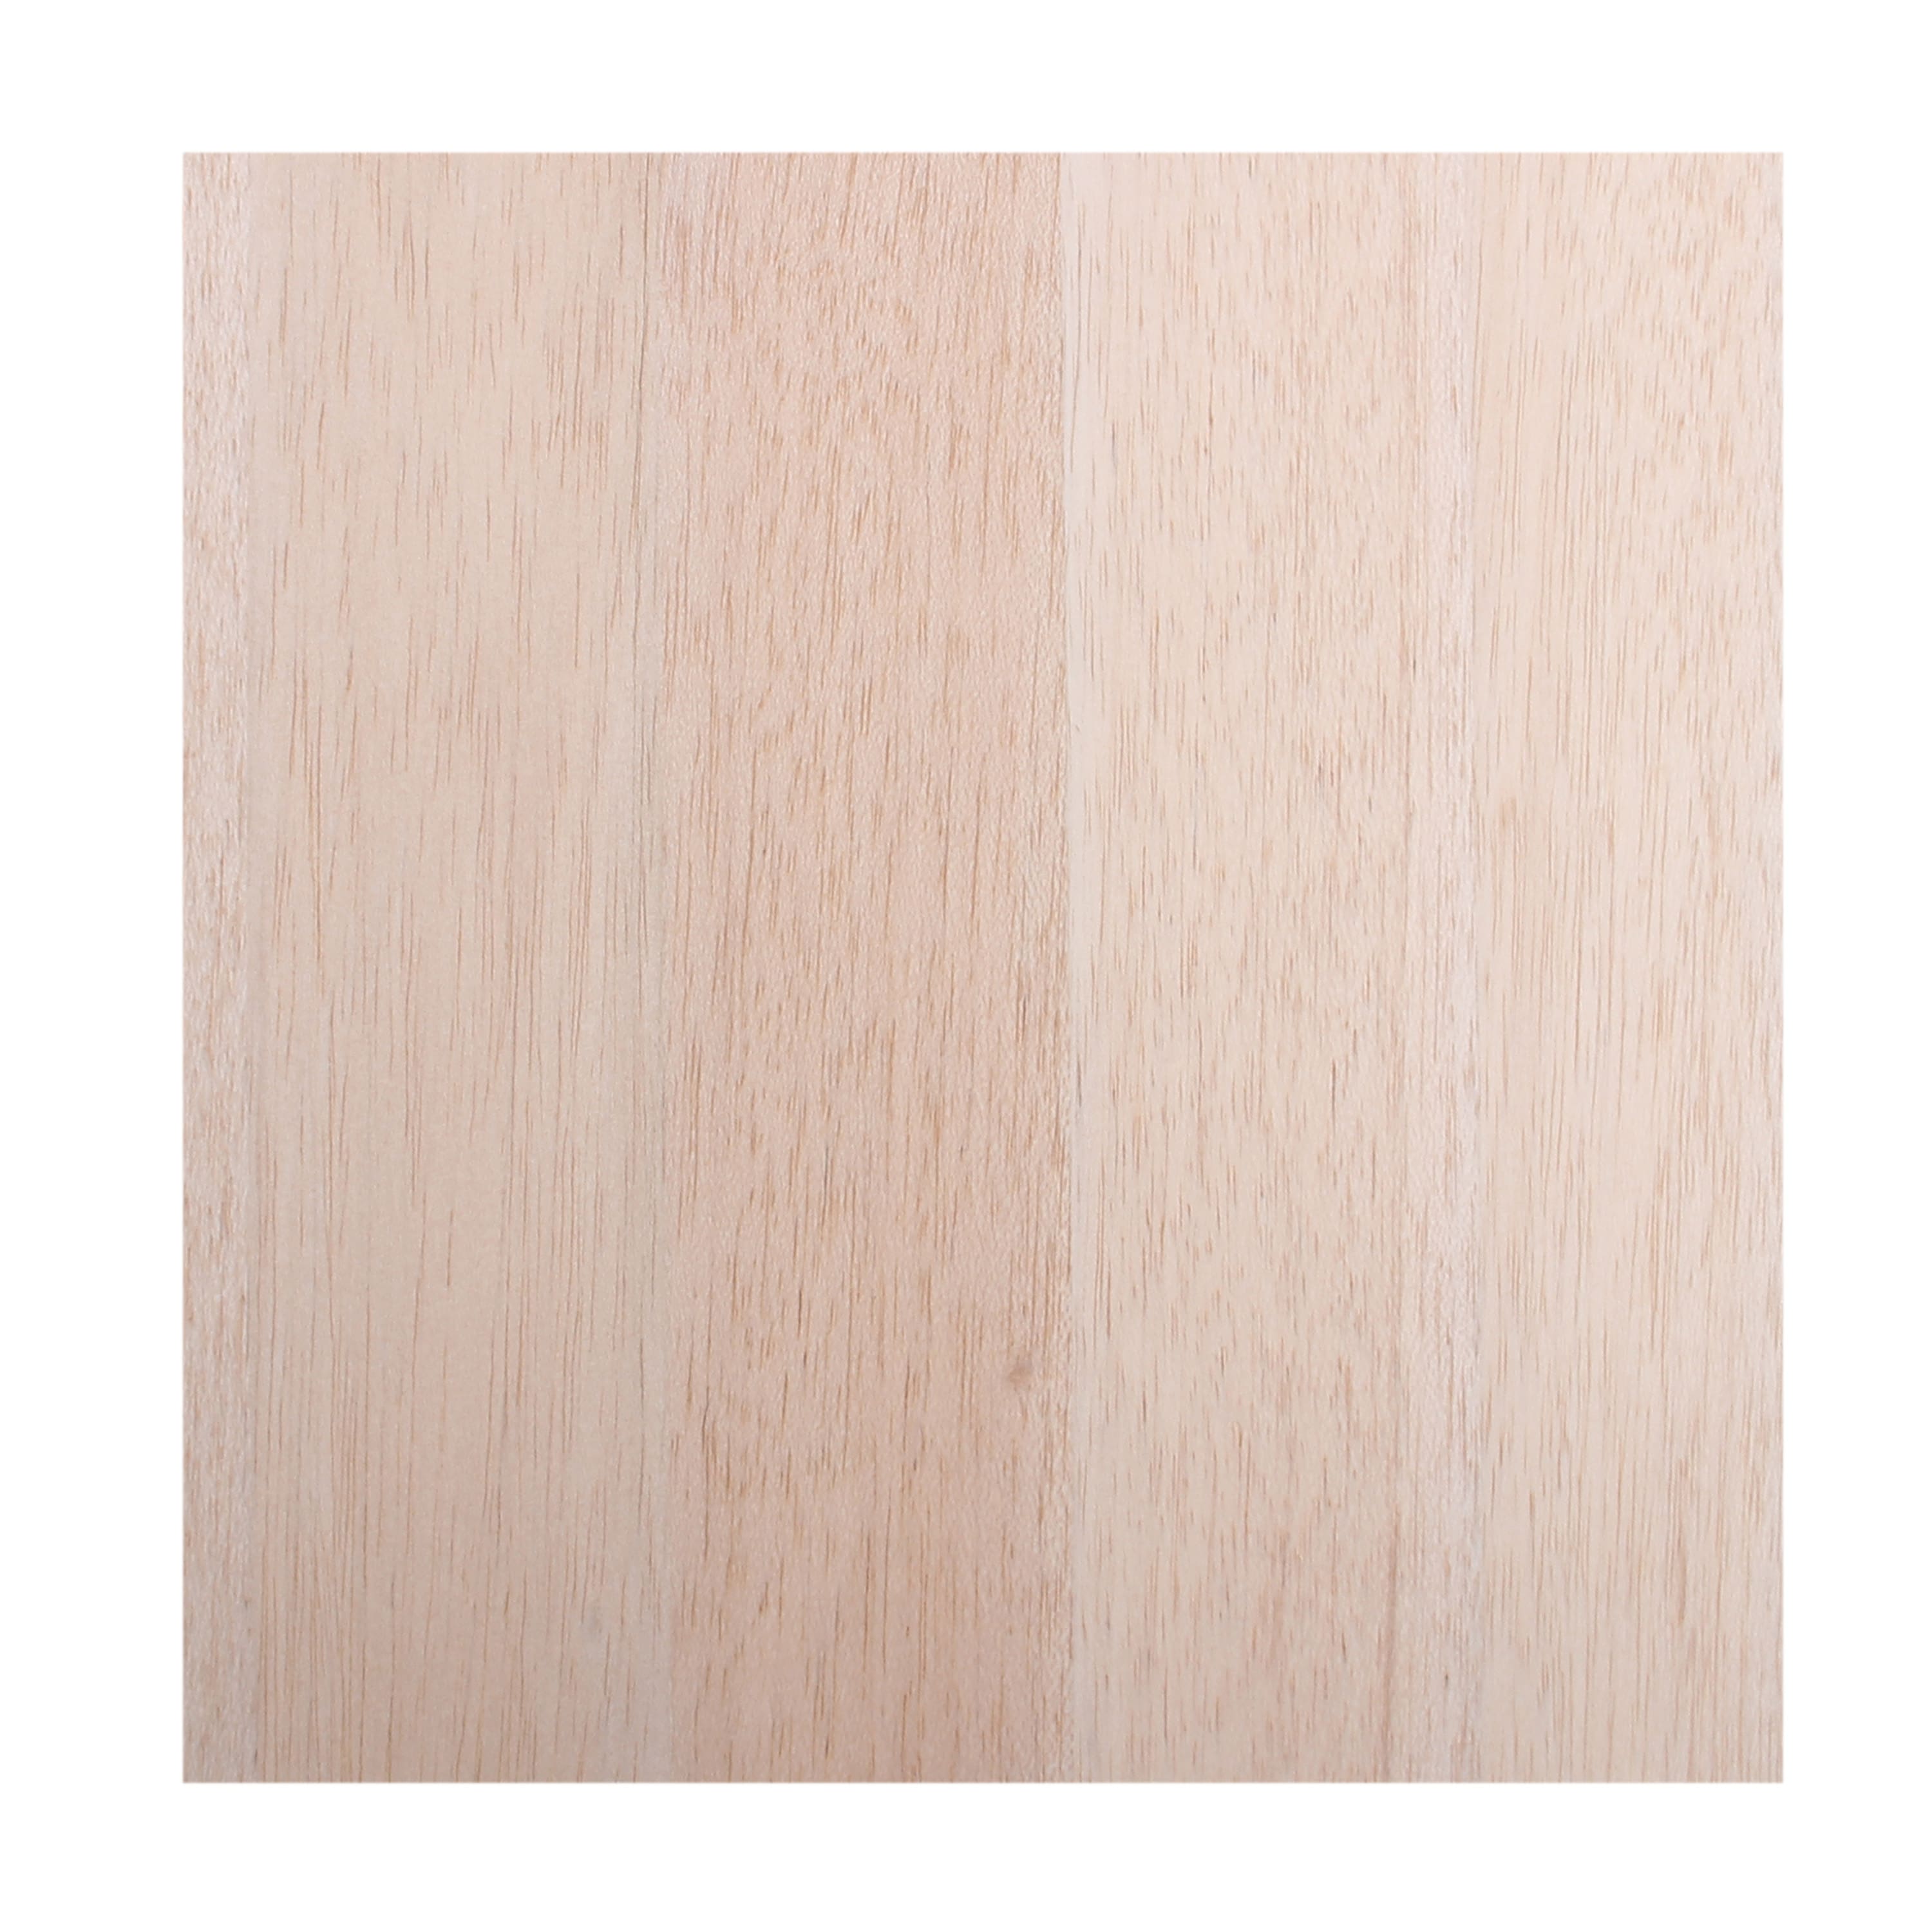 Make Market 11.5 x 11.5 Balsa Wood Surface - Each